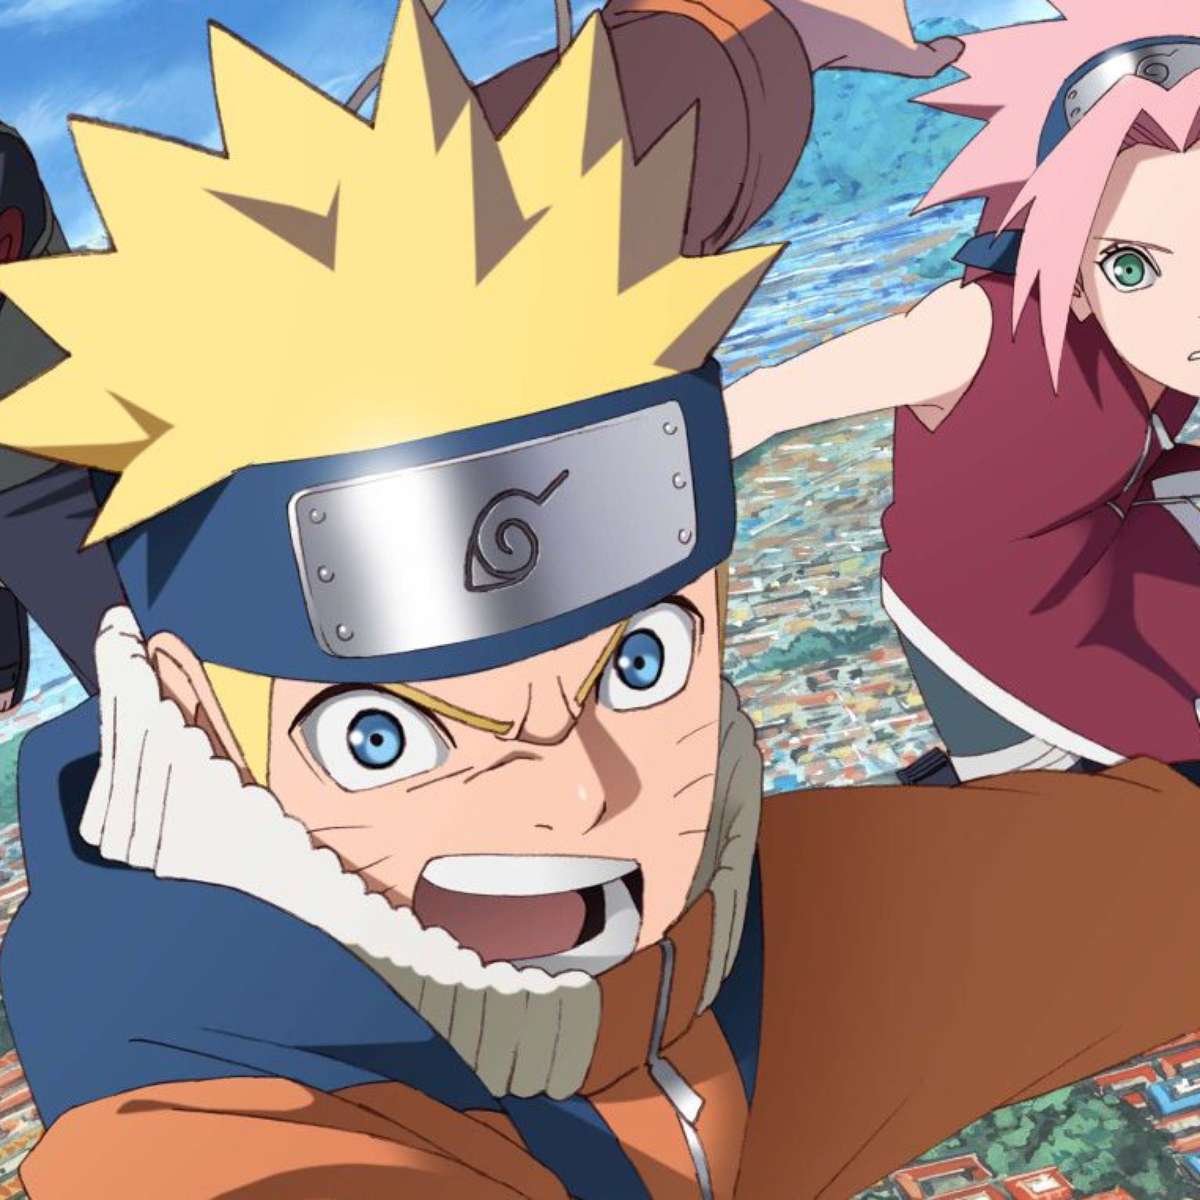 Naruto vai ganhar remake para celebrar os 20 anos do anime; veja trailer